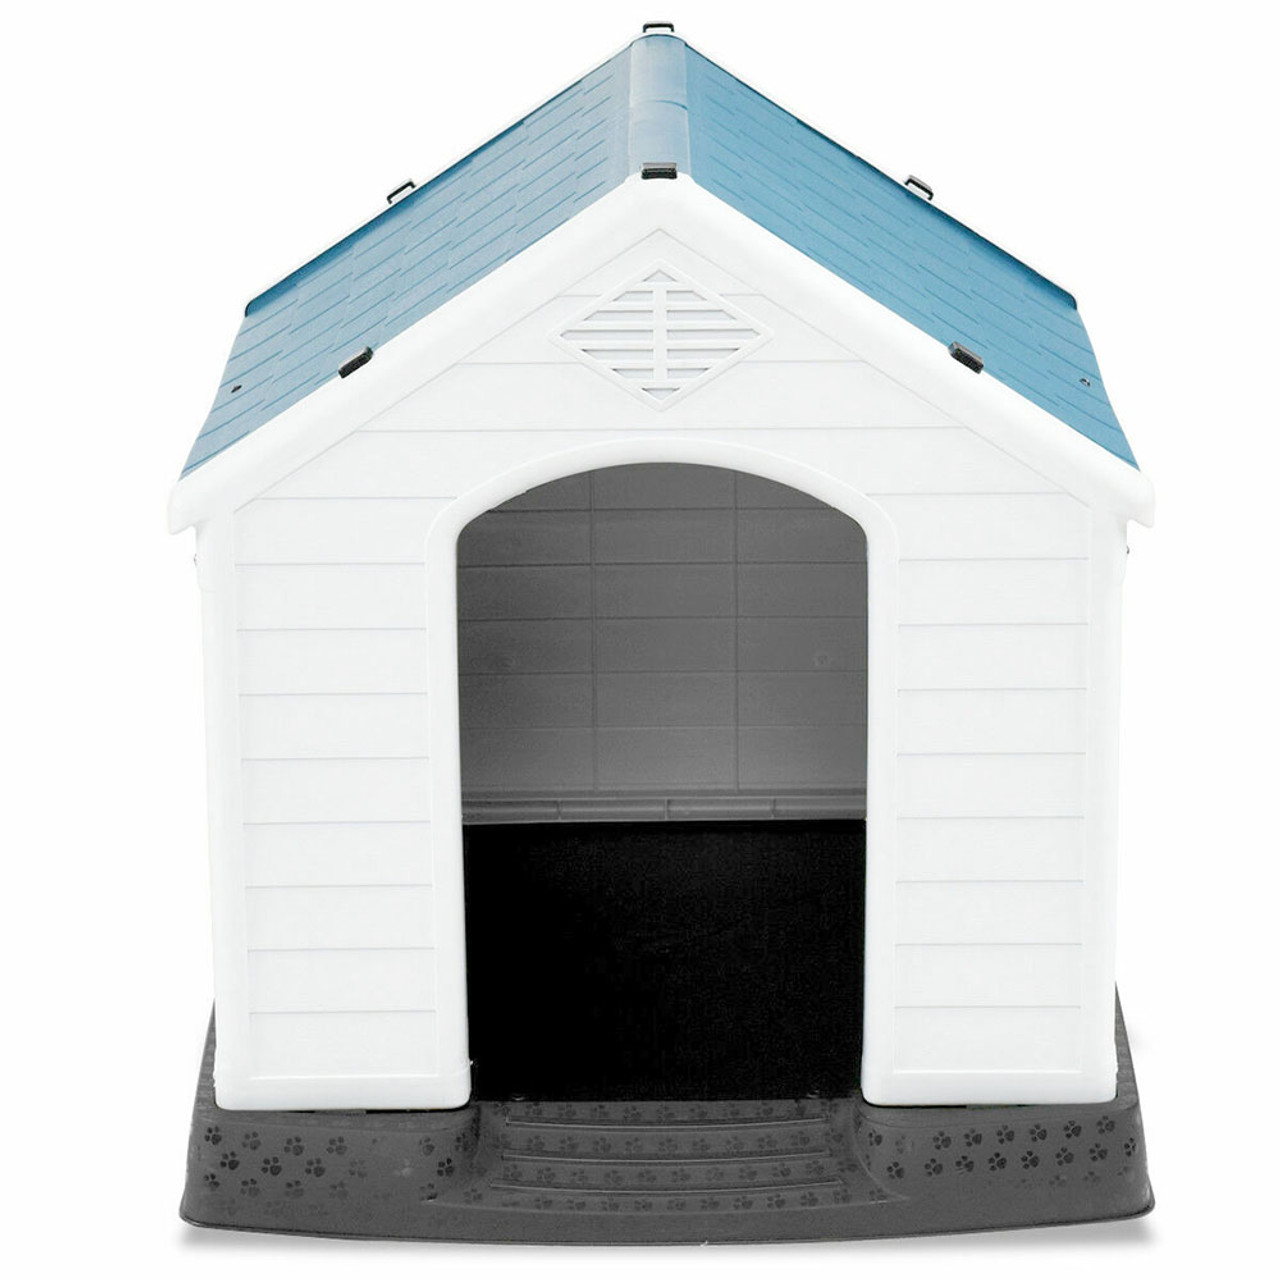 Medium-Sized Dog House product image